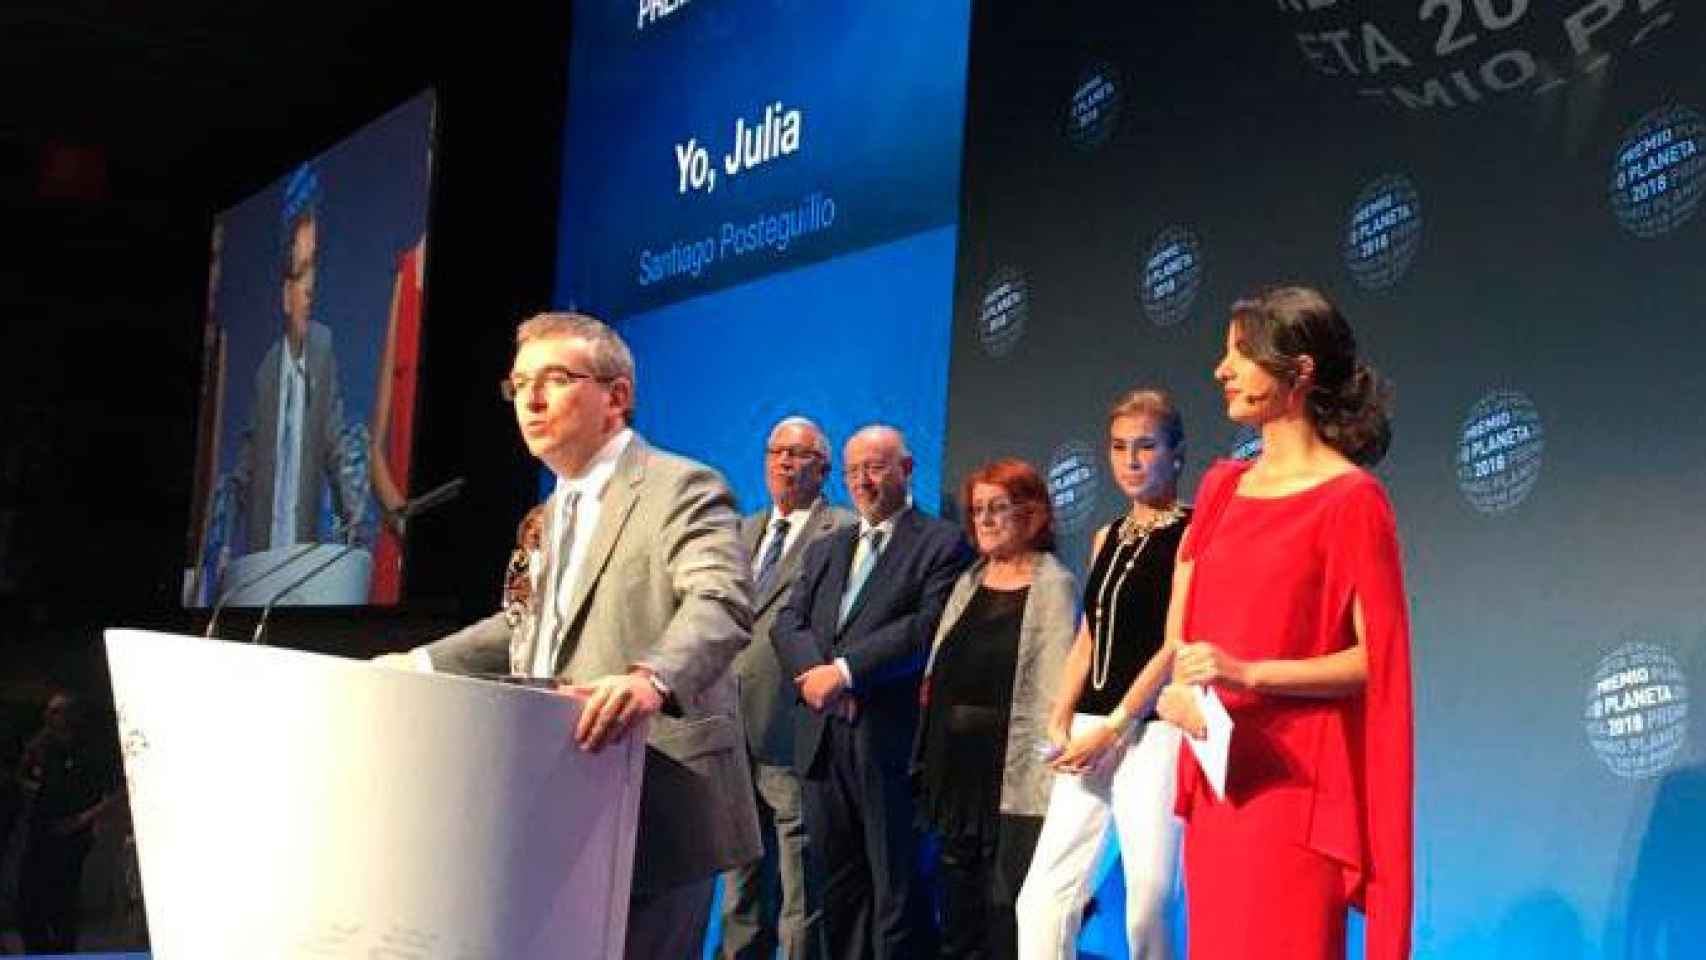 Santiago Posteguillo, el ganador del 67 Premio Planeta con la novela histórica 'Yo, Julia' / CG